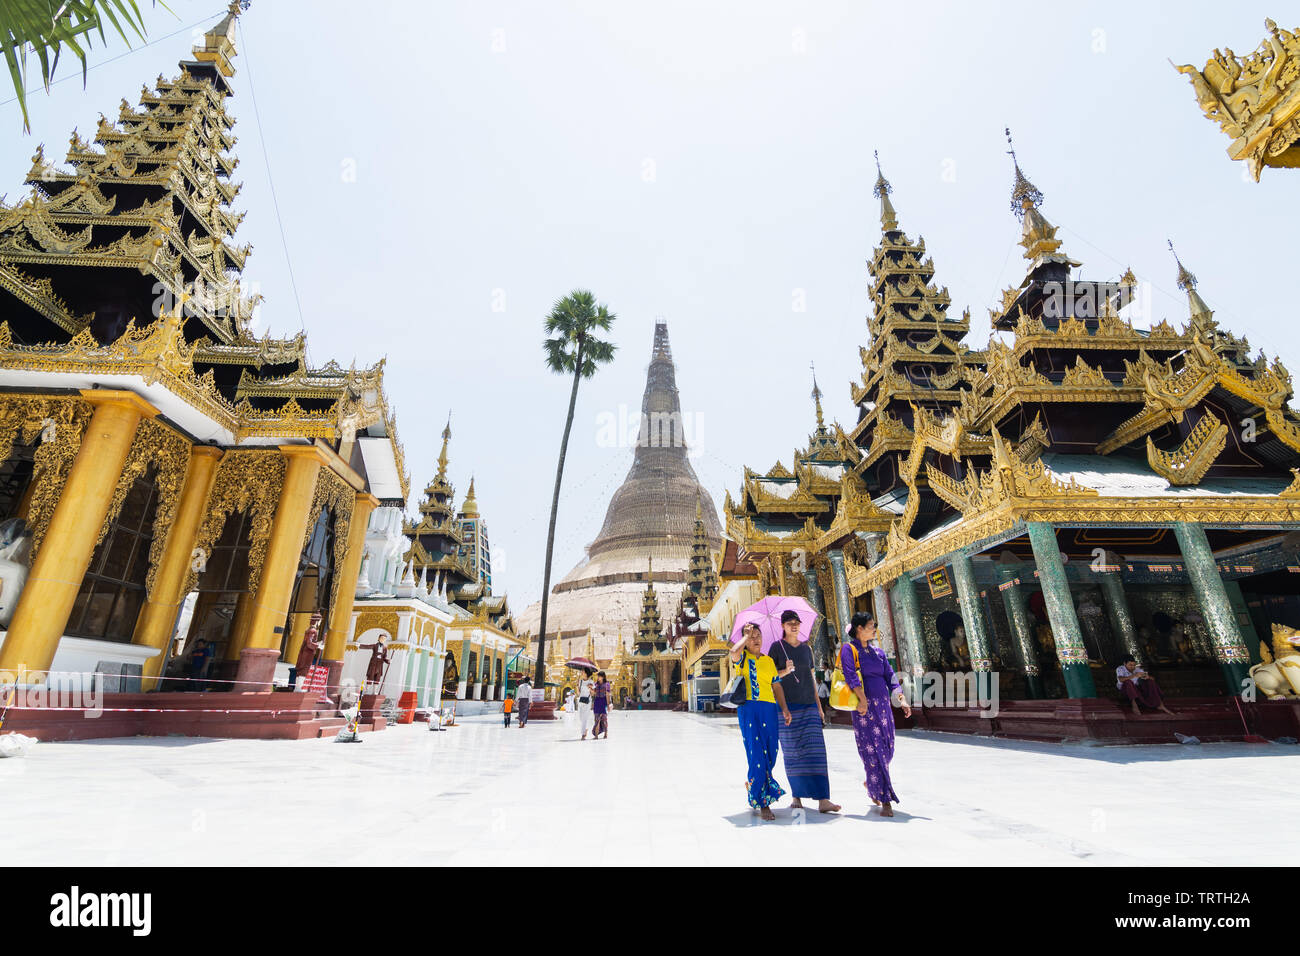 Yangon, Myanmar - März 2019: Touristen zu Fuß in der Shwedagon Pagode Tempel komplex. Stockfoto